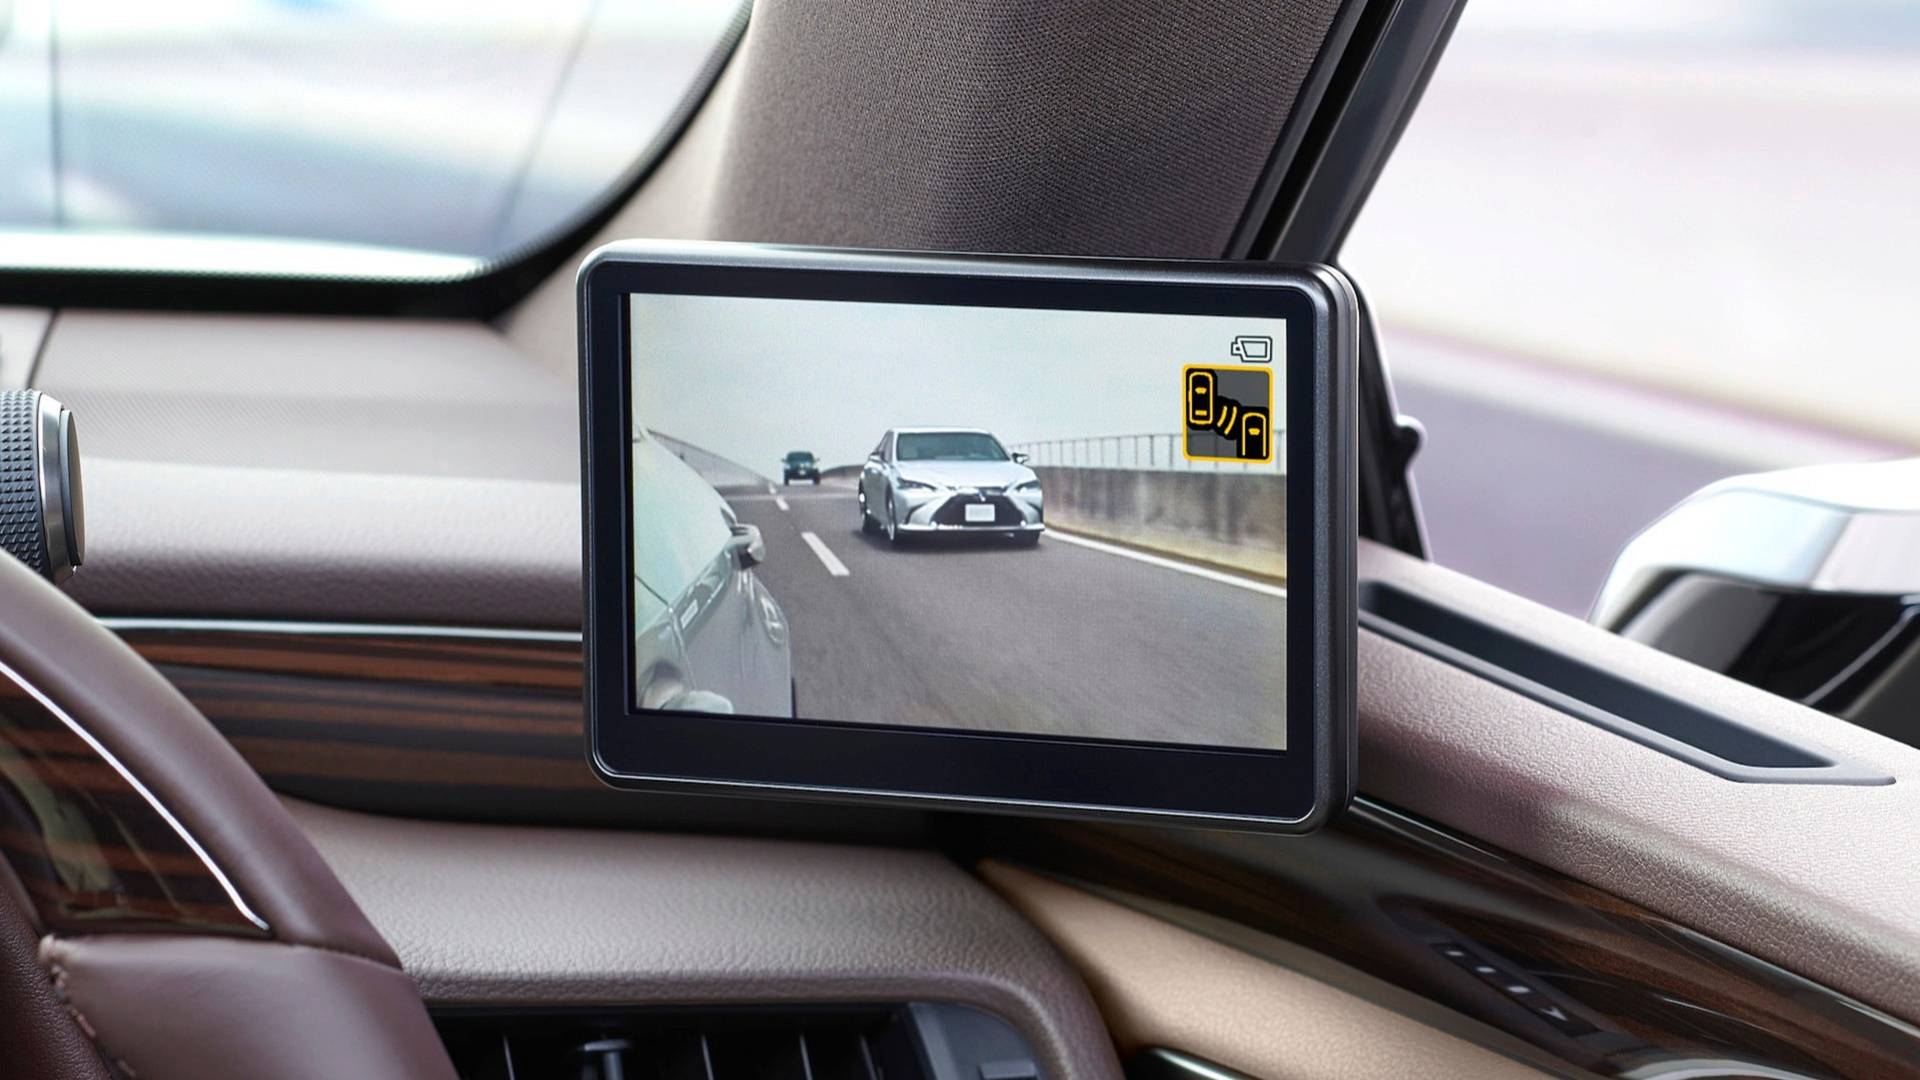 Digitale Außenspiegel von Lexus: Seitenspiegel gehören der Vergangenheit an